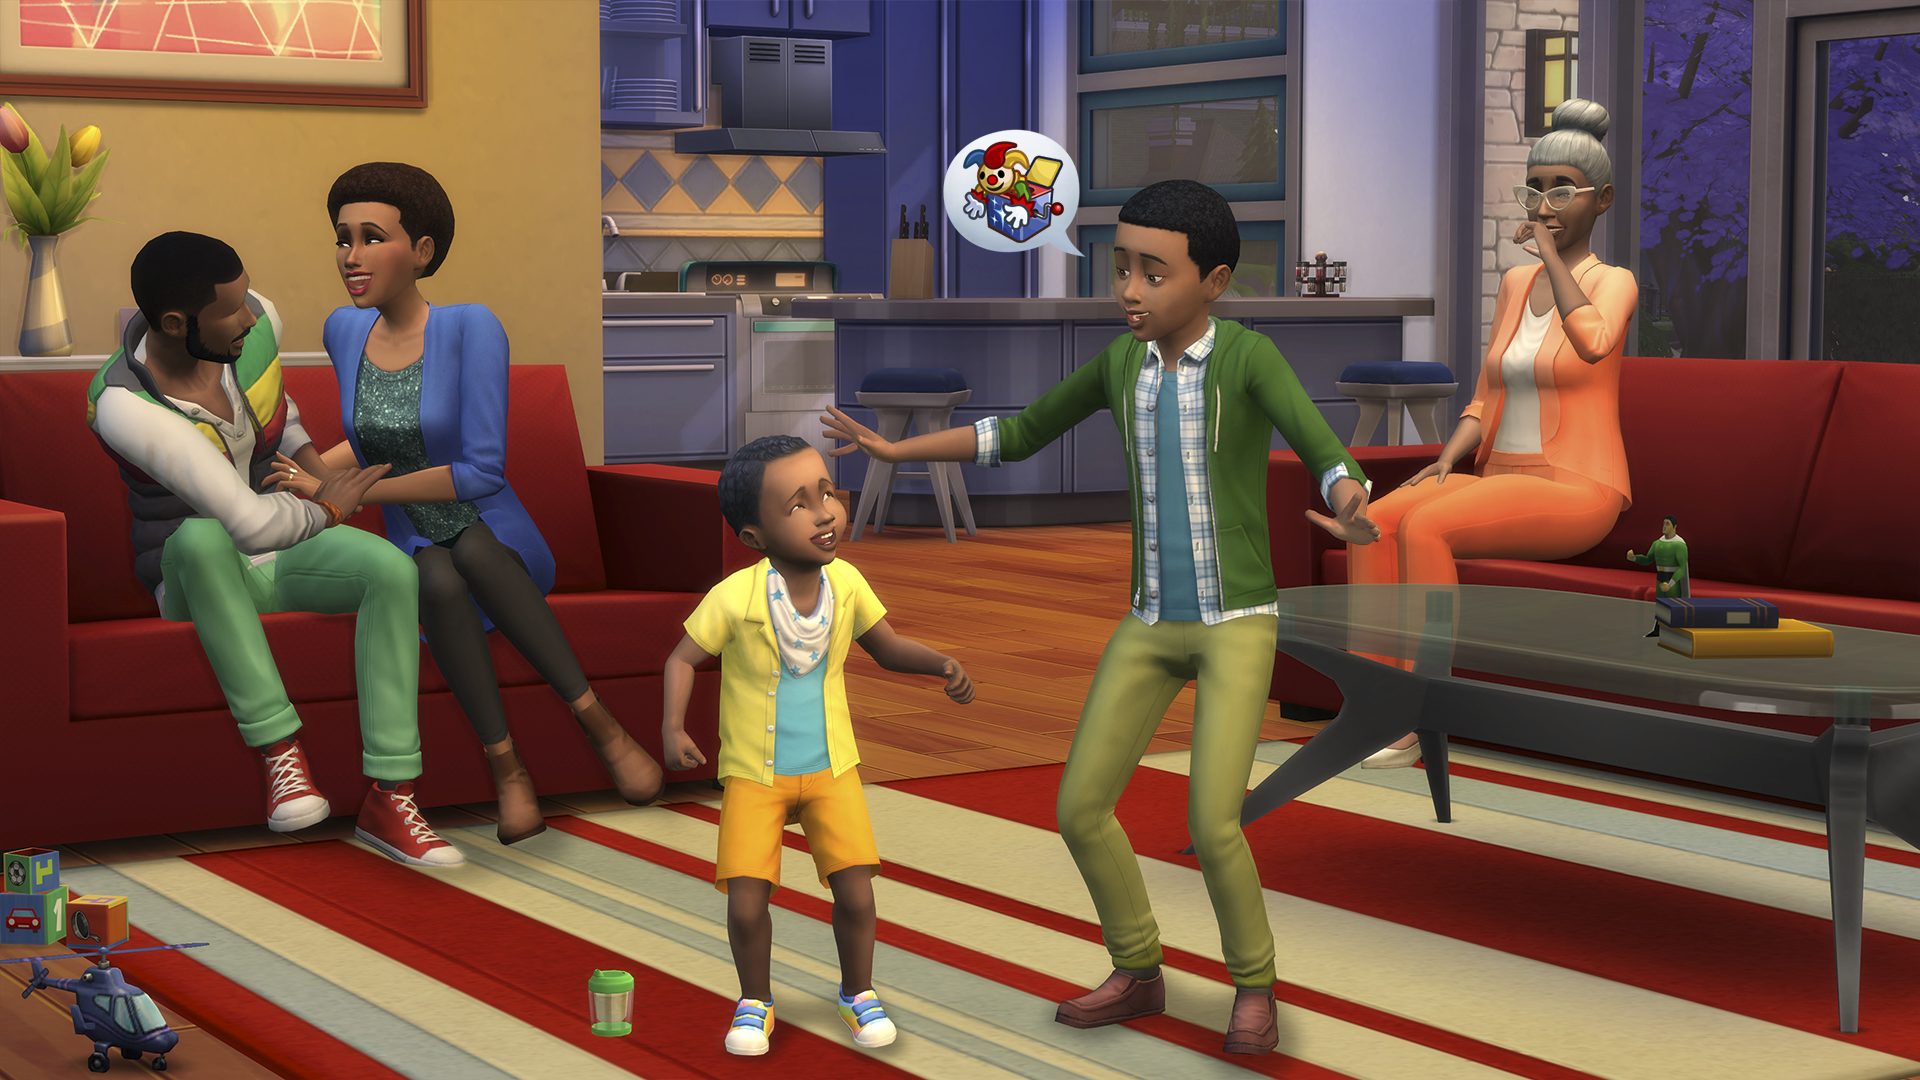 The Sims 4 – снимок экрана